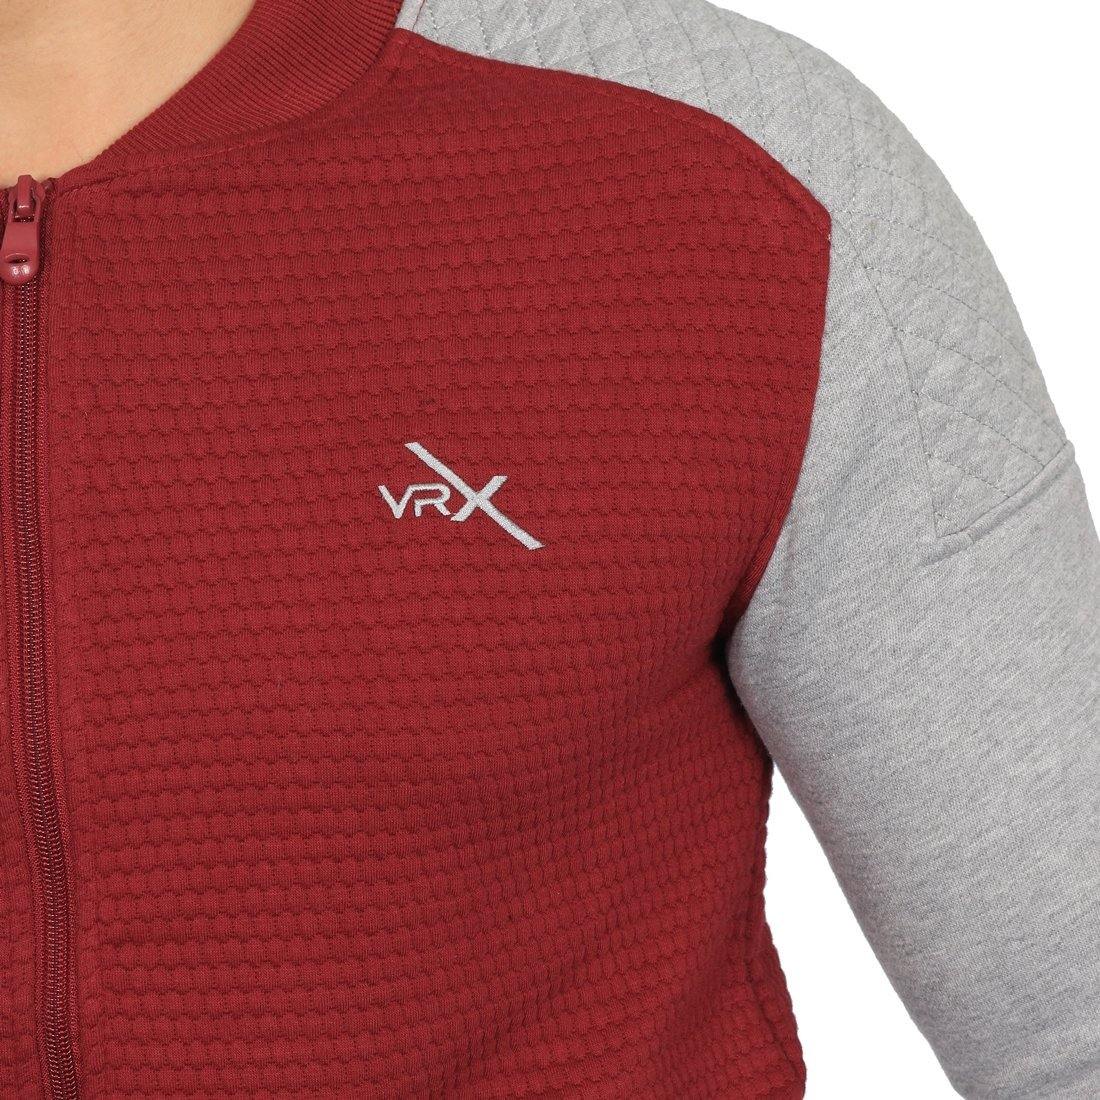 Vector X Fleece-X Track Suit Red-Grey - Best Price online Prokicksports.com